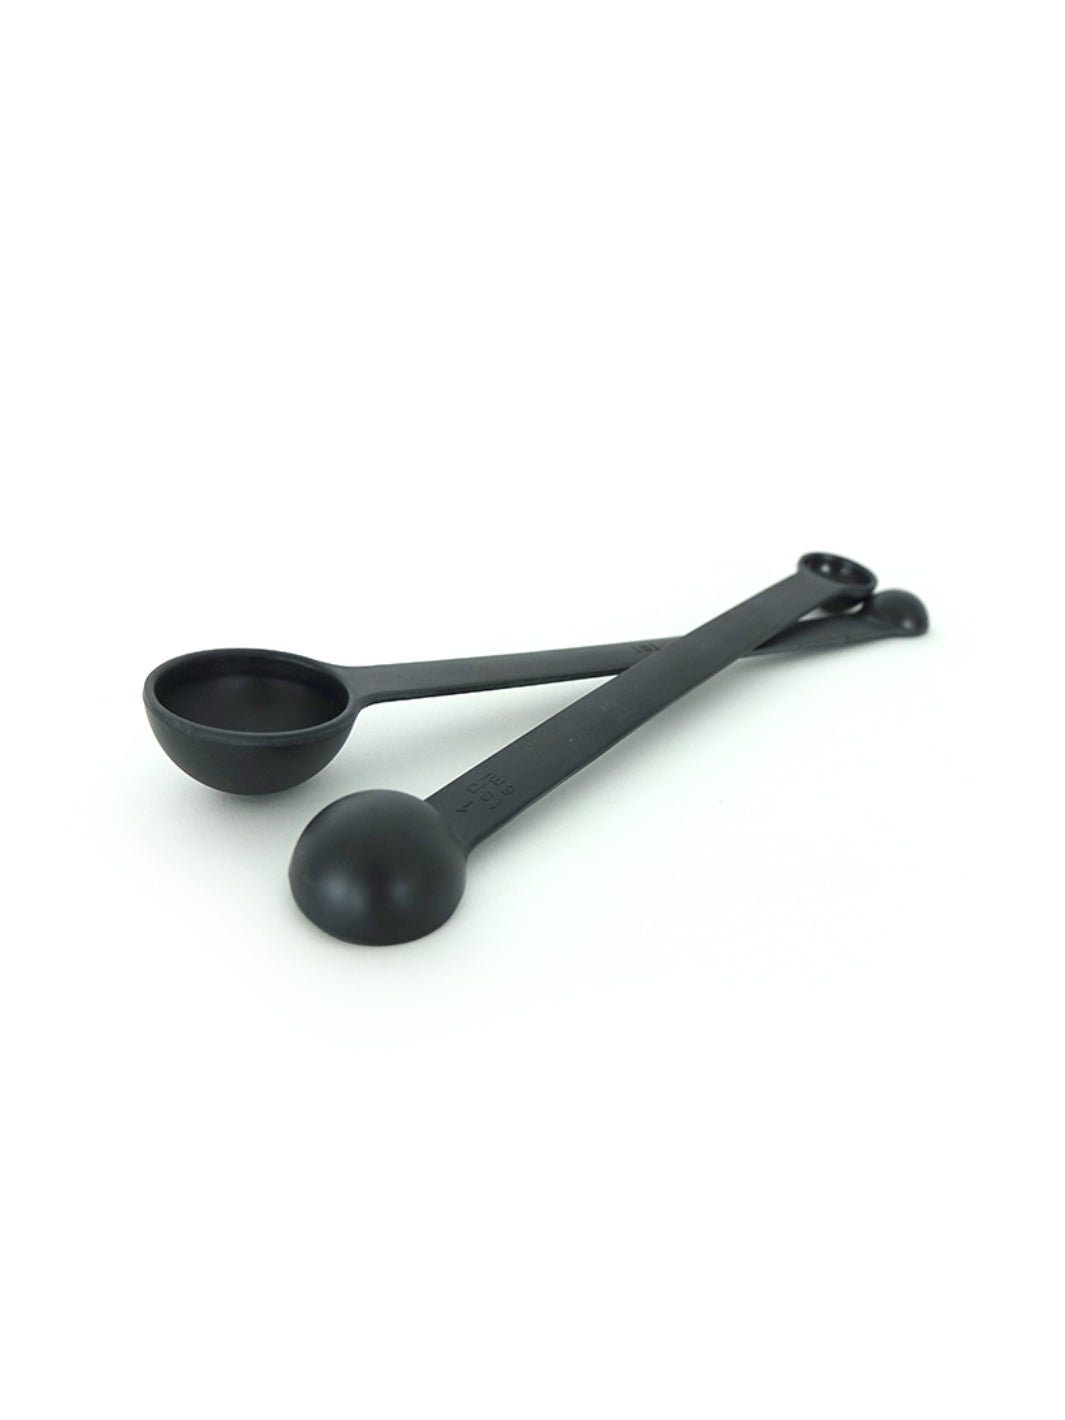 EKOBO Pronto Measuring Spoon Set (2-Spoons)